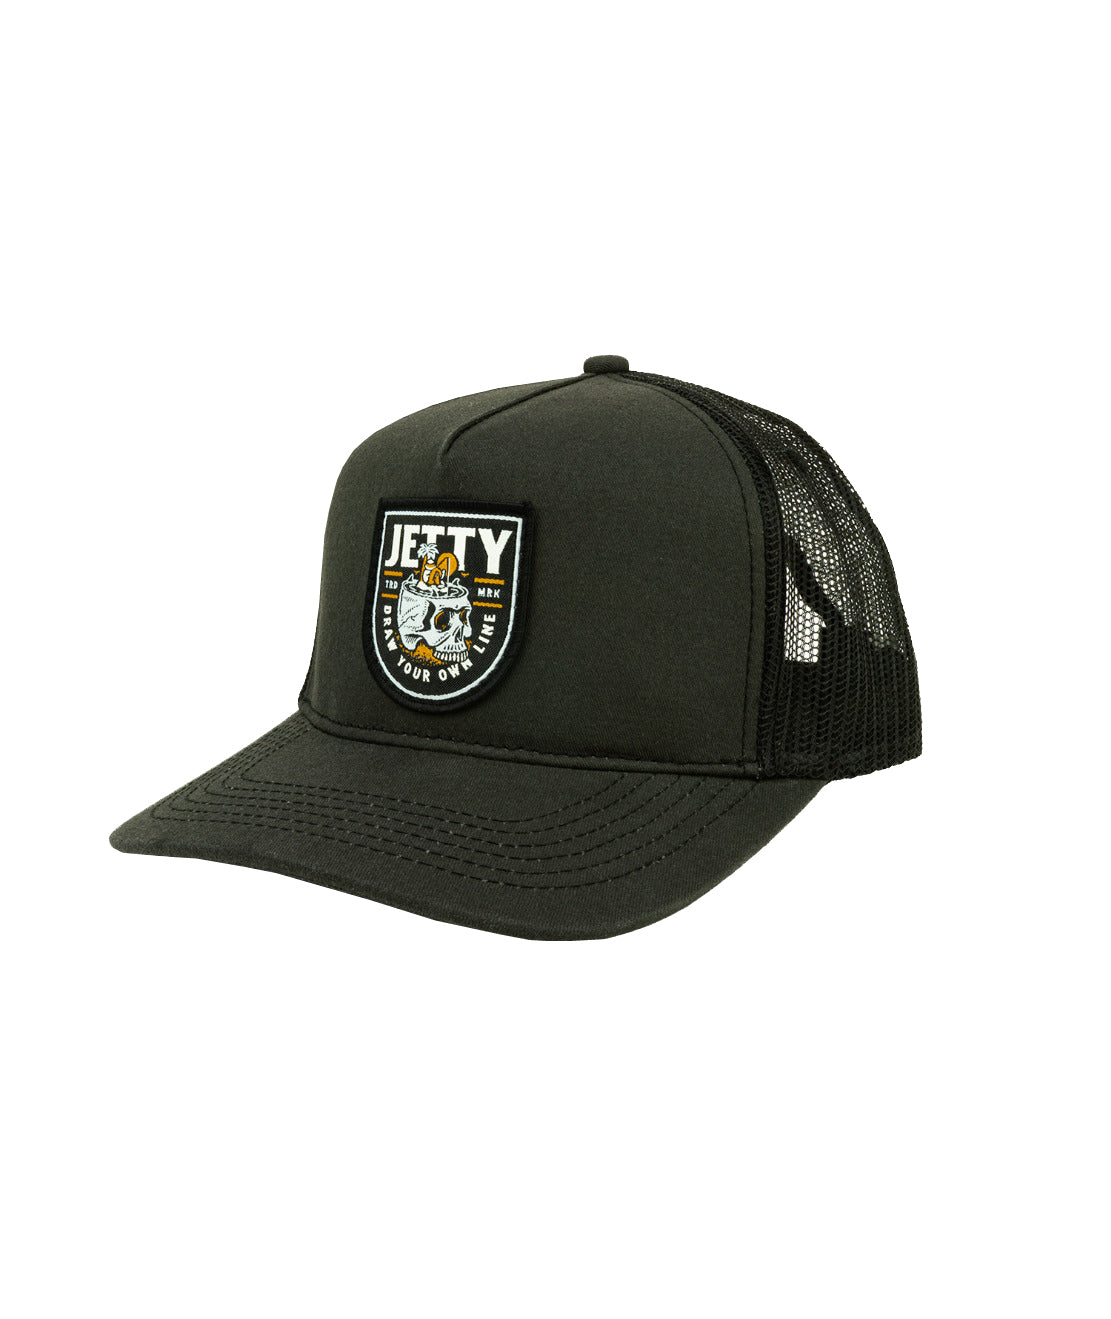 Jetty Stranded Trucker Hat